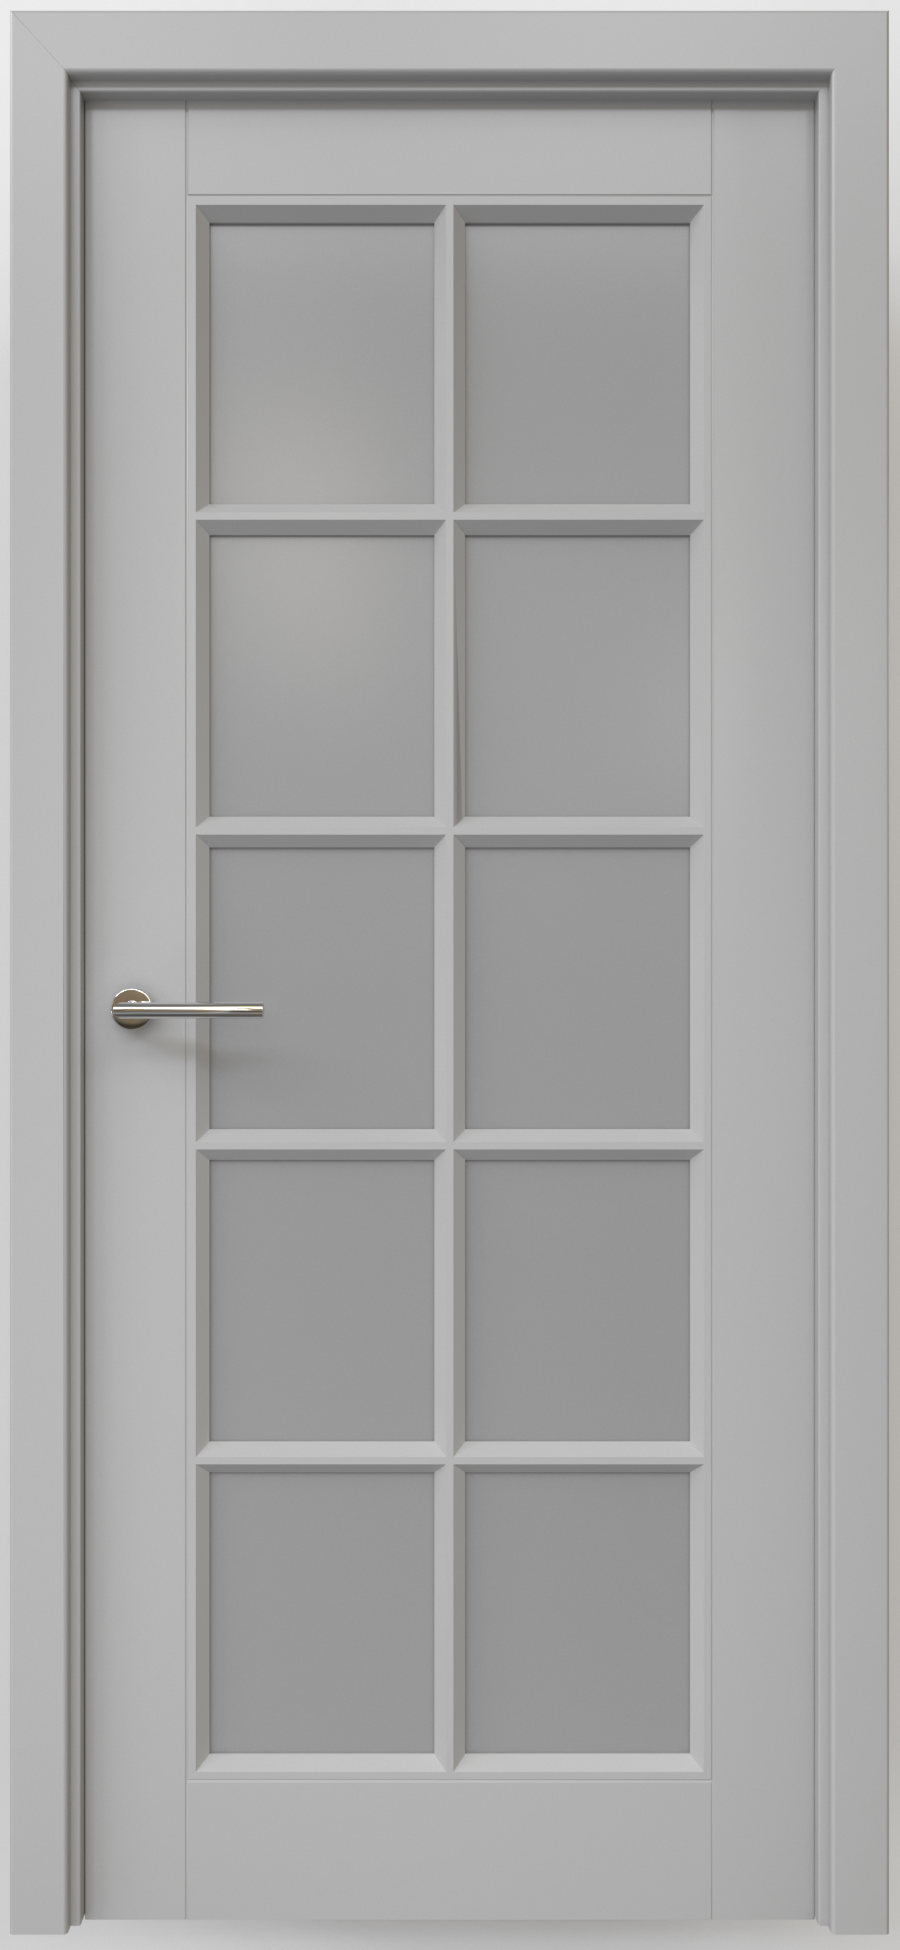 Полотно дверное остекленное Эмаль Классика-5 ПРАВОЕ 600 серый стекло мателюкс (защелка маг.)